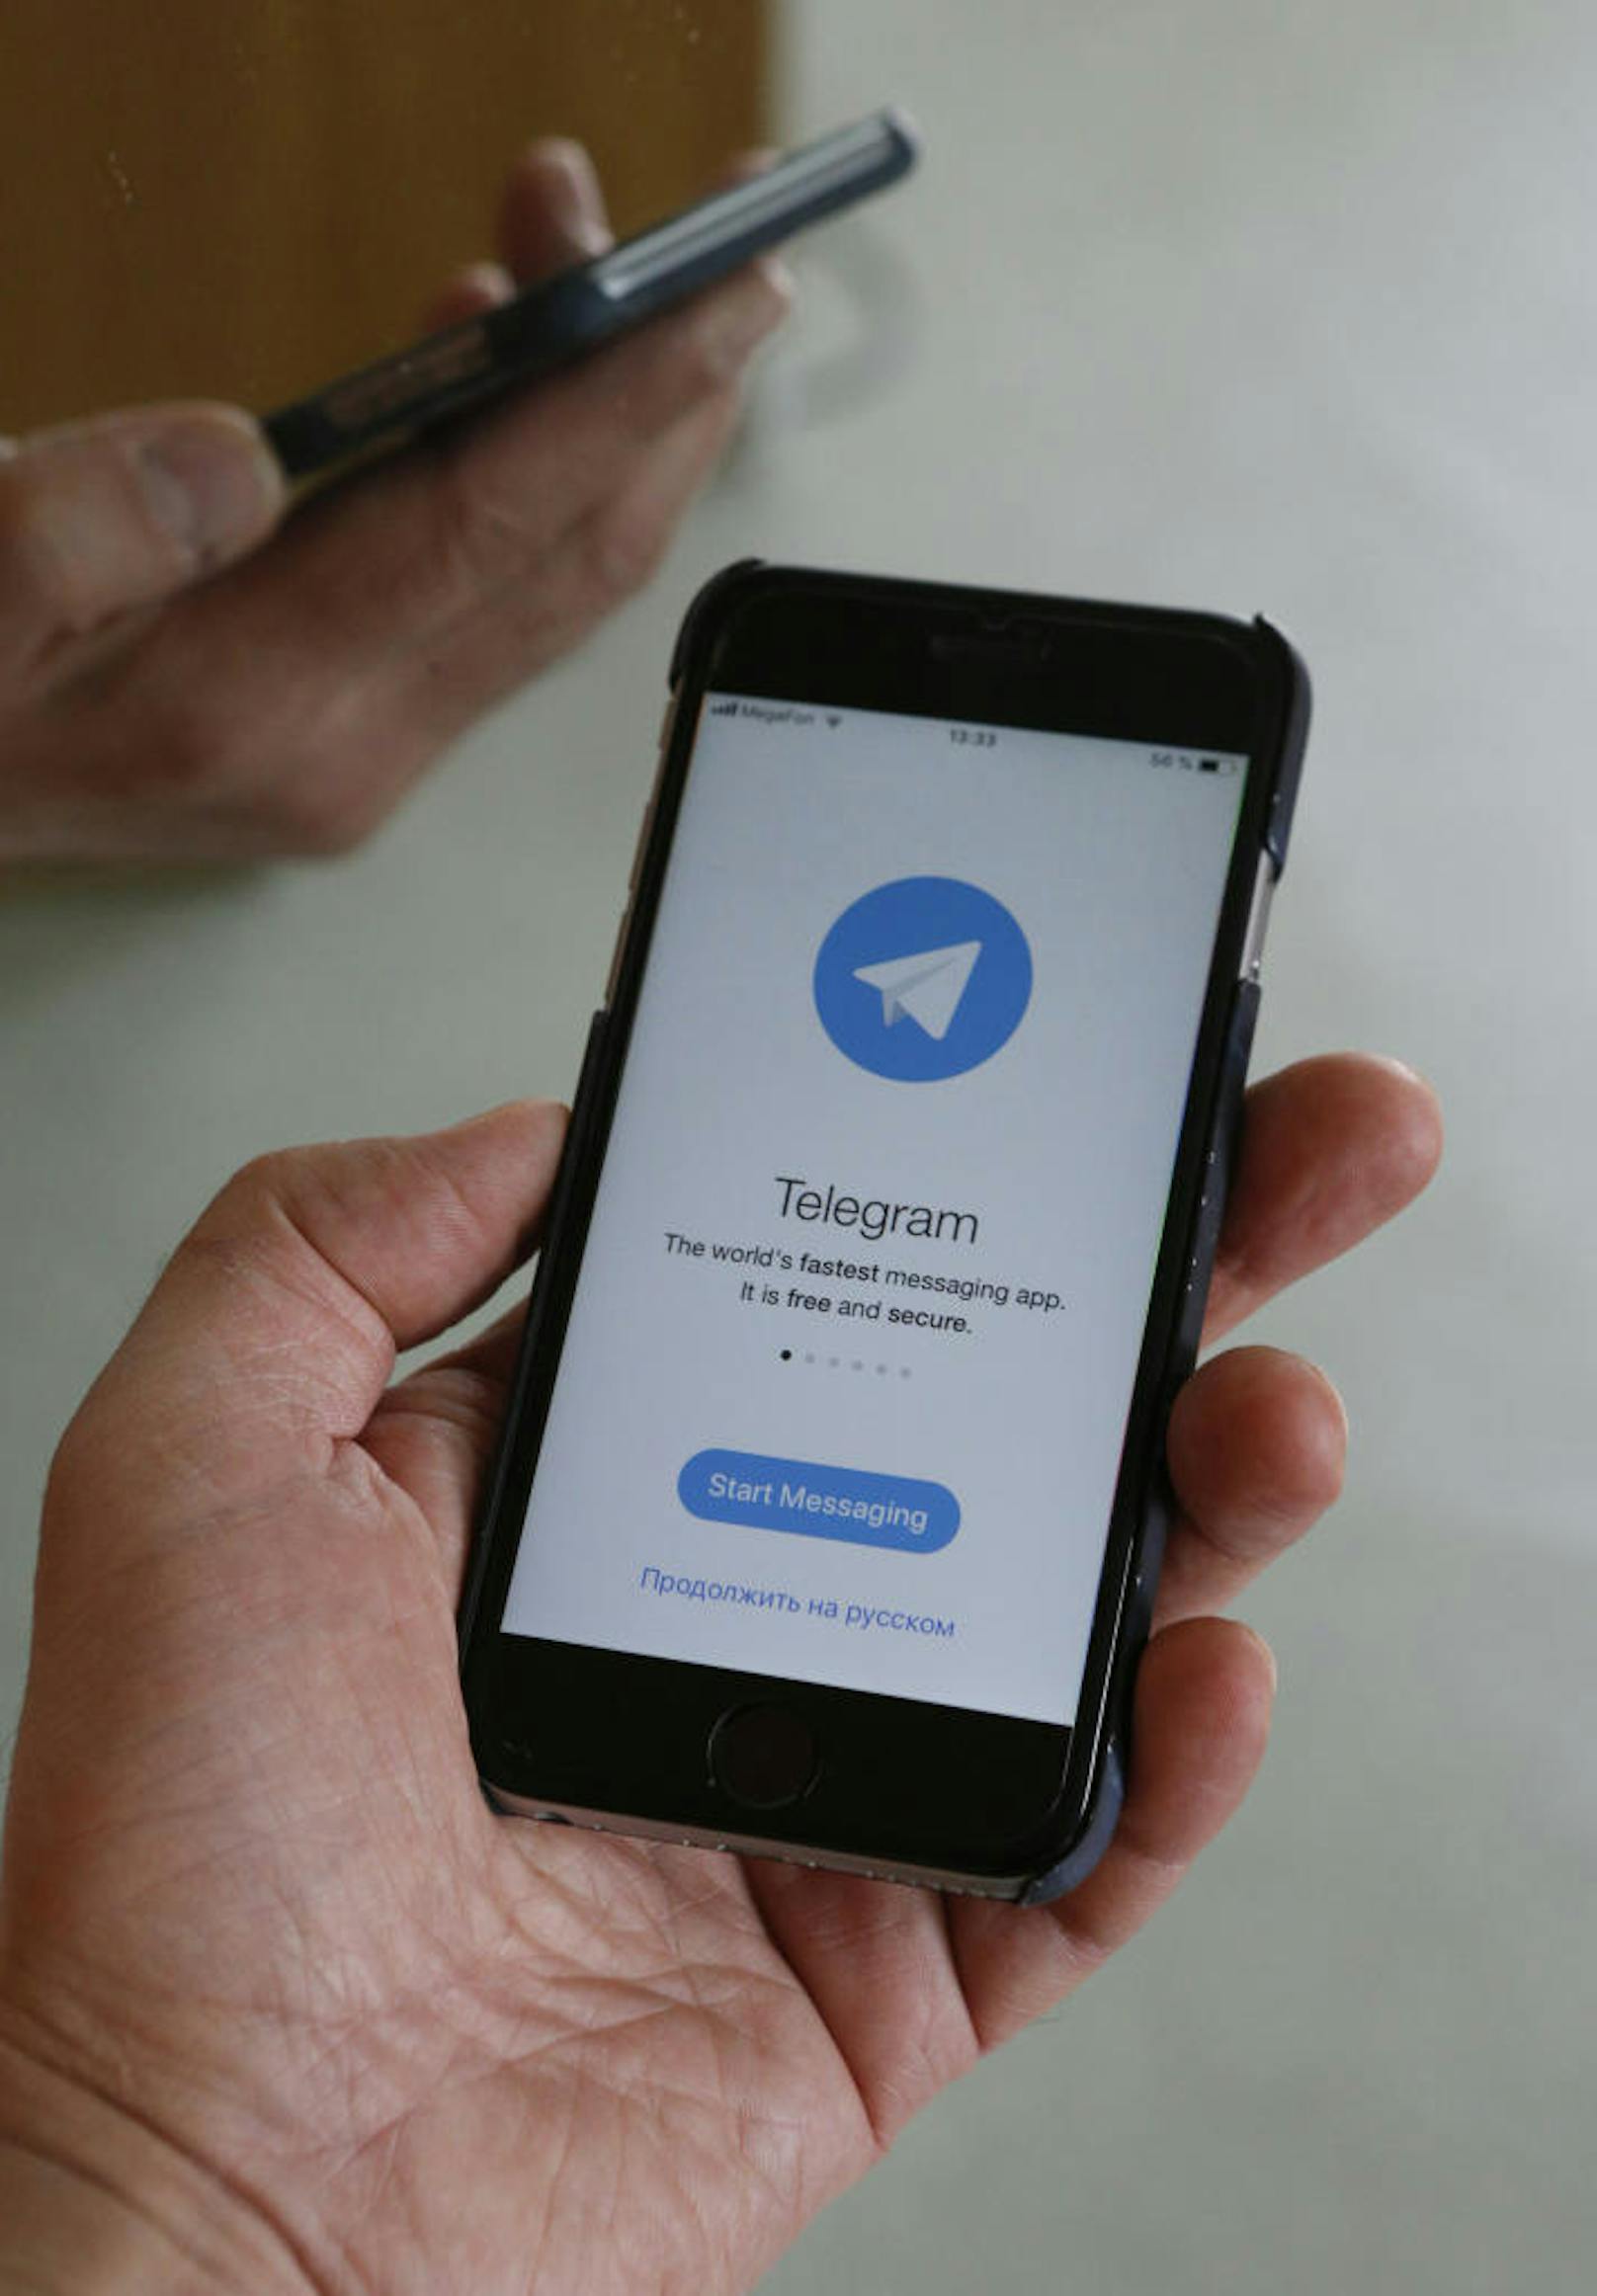 Die russischen Geheimdienste hatten vom Messenger Telegram verlangt, seine privaten Chats zu entschlüsseln. Telegram weigerte sich, woraufhin fast 20 Millionen IP-Adressen blockiert wurden.